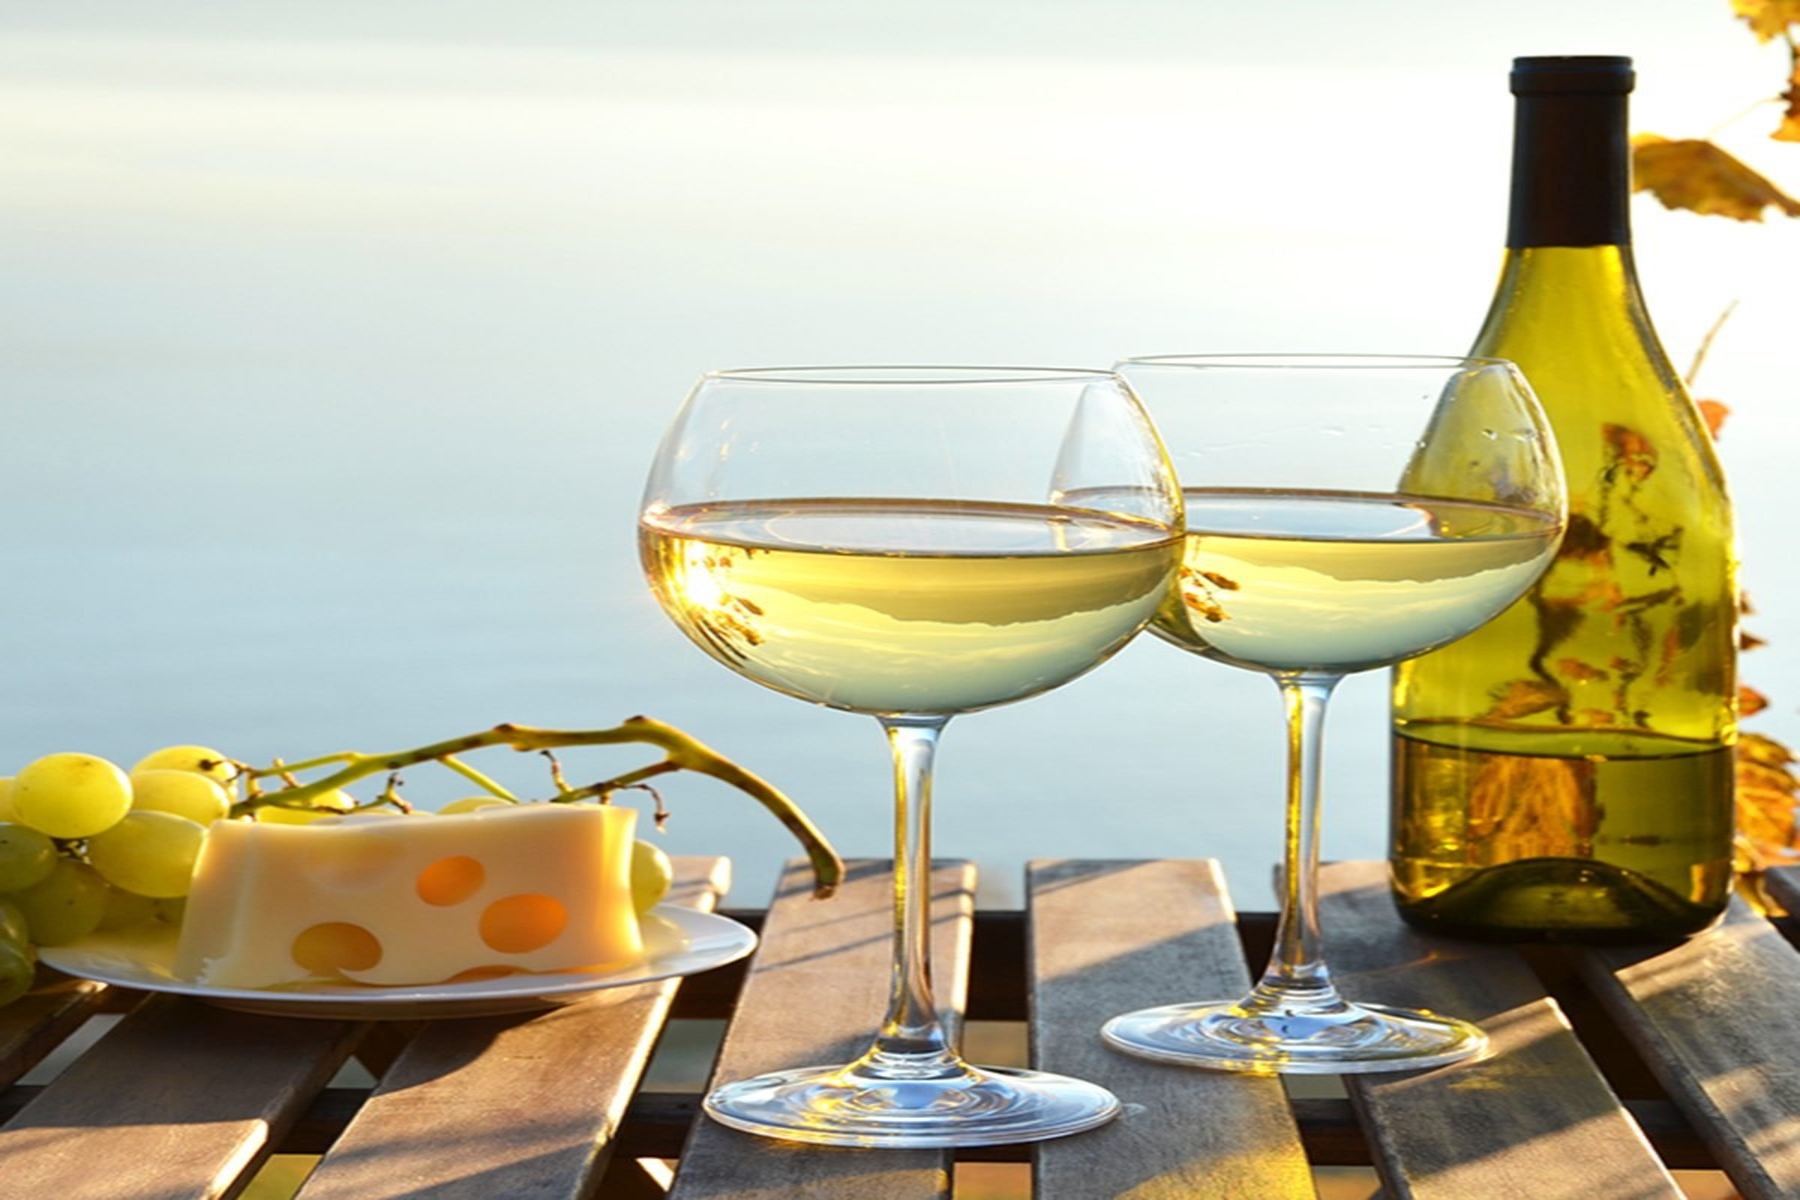 Λευκό κρασί: Ποια φαγητά μπορούν να συνοδευτούν από λευκό κρασί;